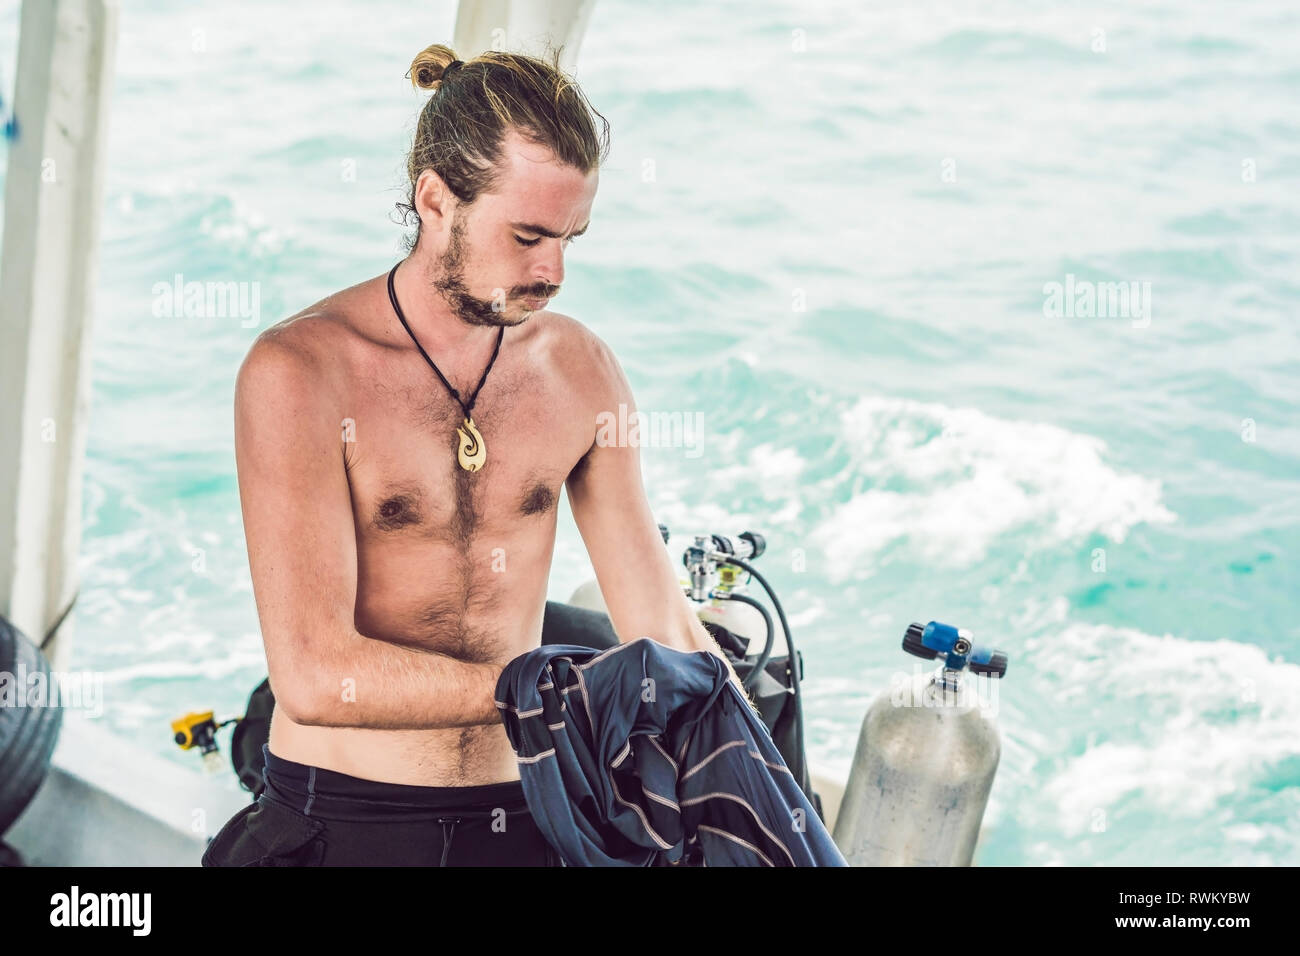 Diver prepara il suo equipaggiamento per le immersioni in mare Foto Stock